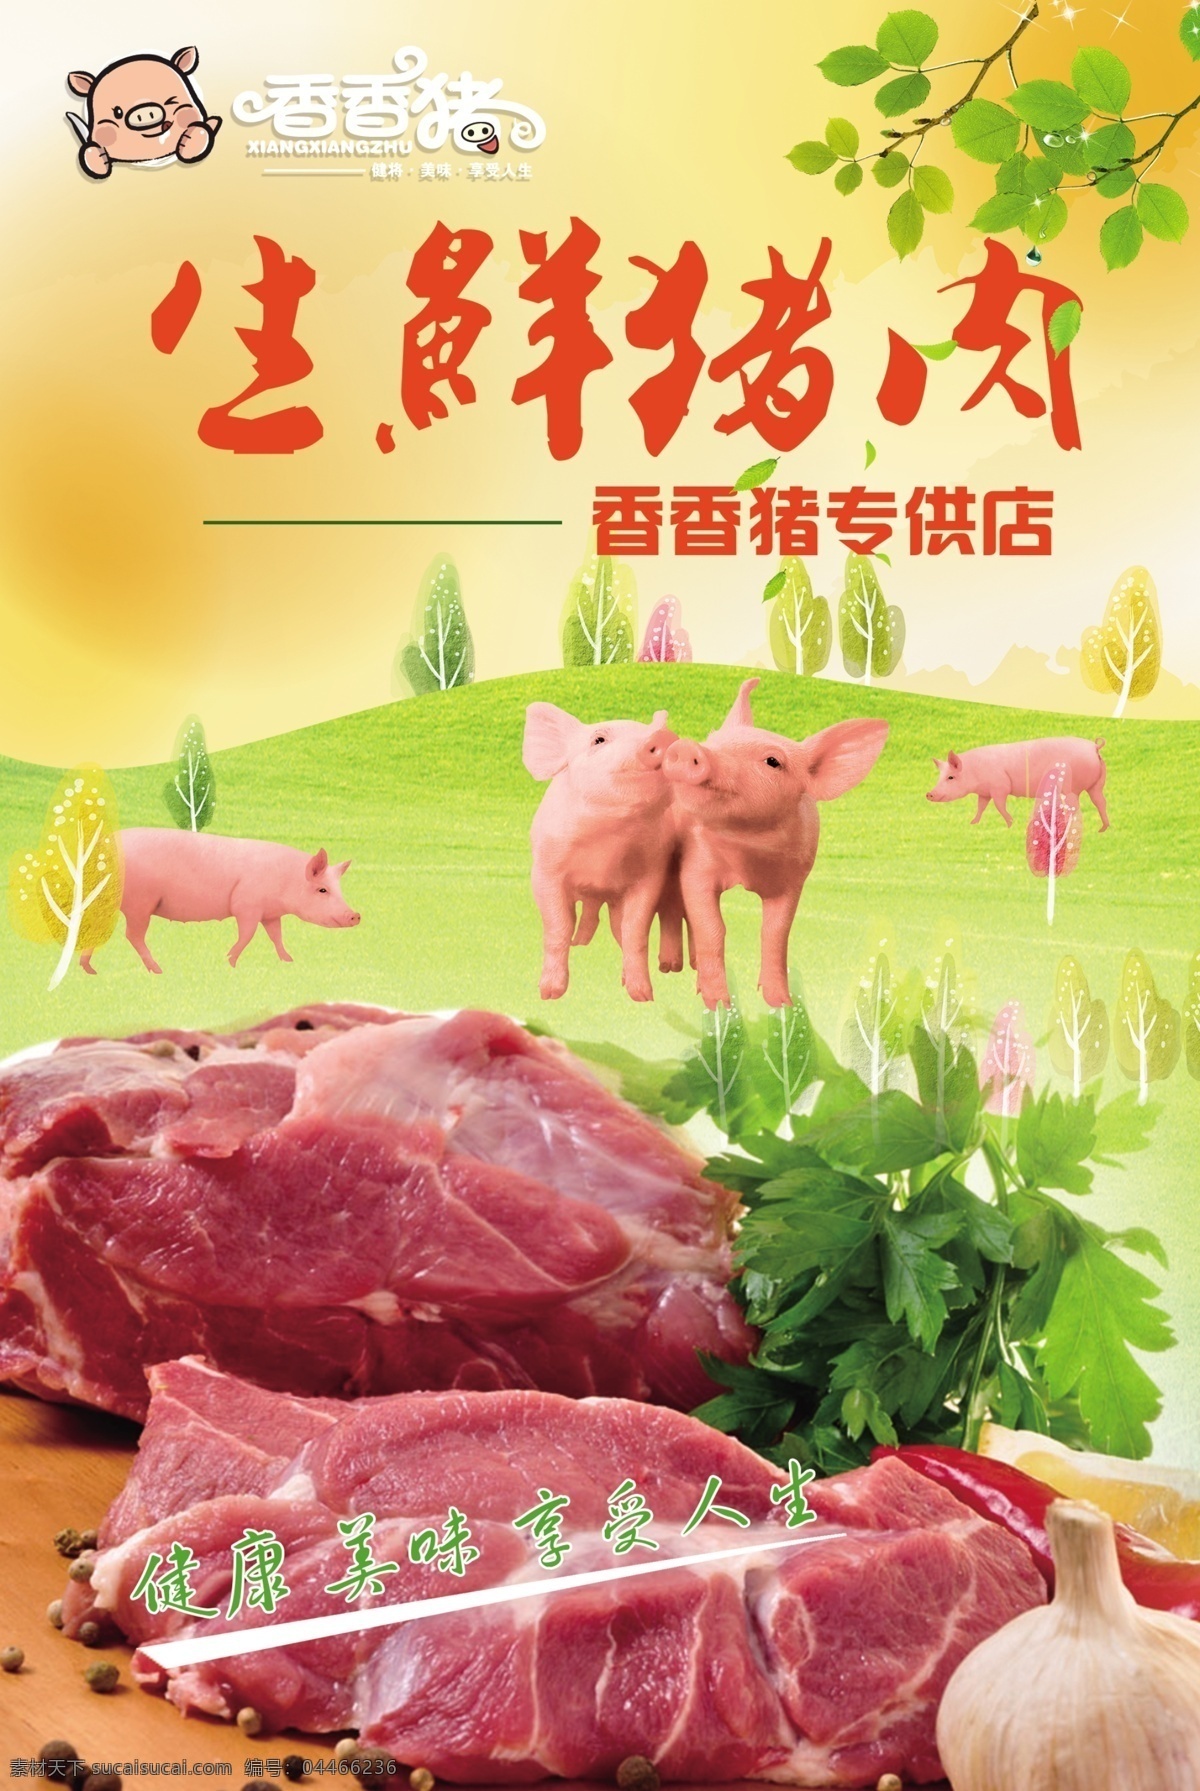 生鲜猪肉 生鲜 猪肉 专卖店 海报 肉食 其它设计